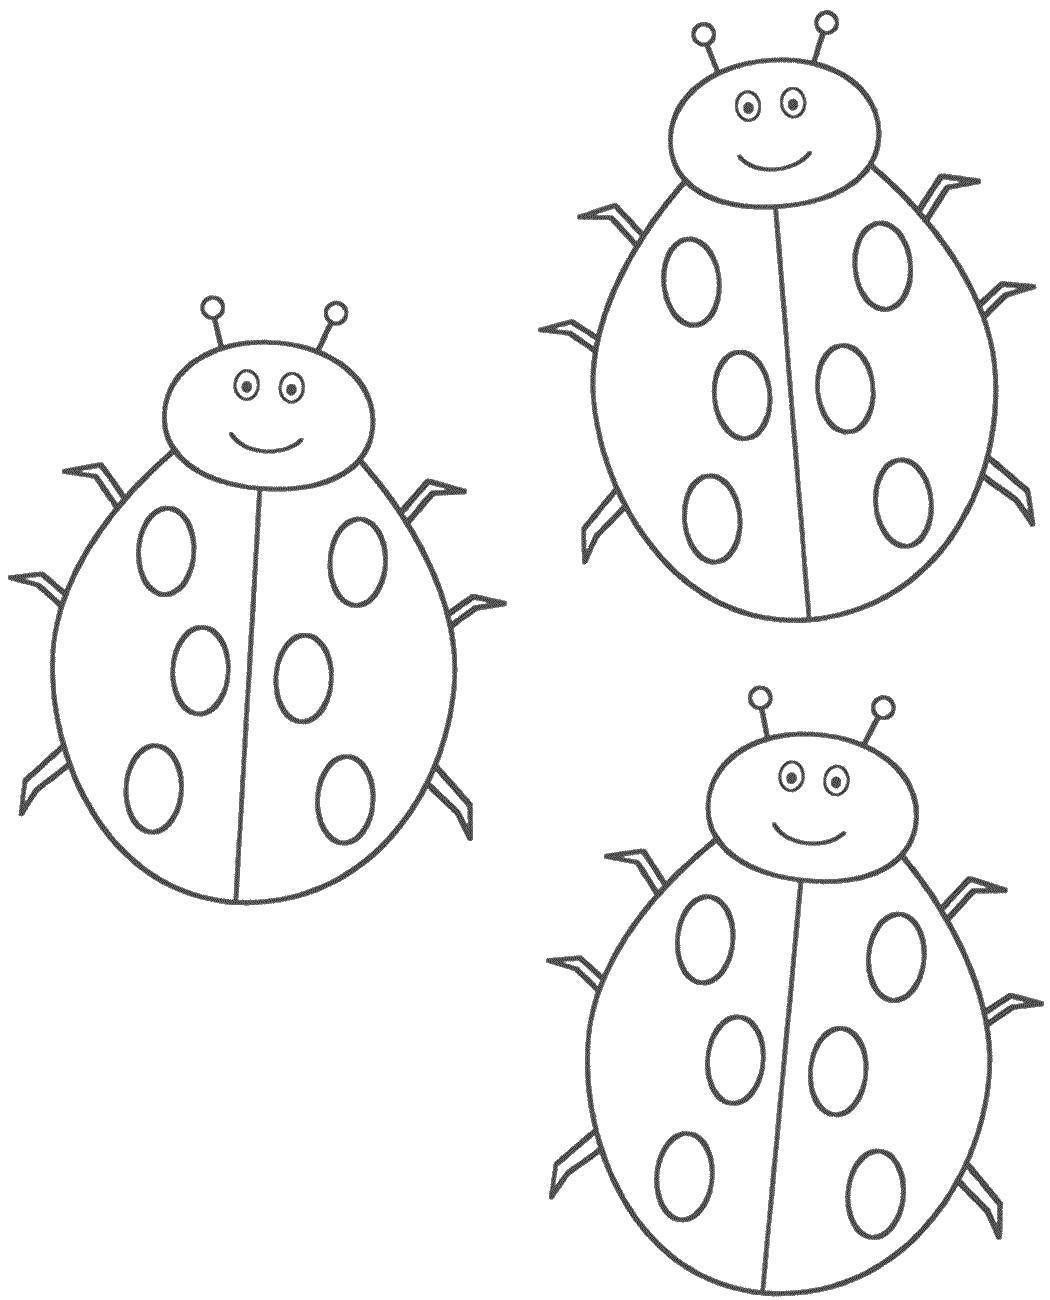 Coloring Three ladybugs. Category Ladybug. Tags:  insect, ladybug.